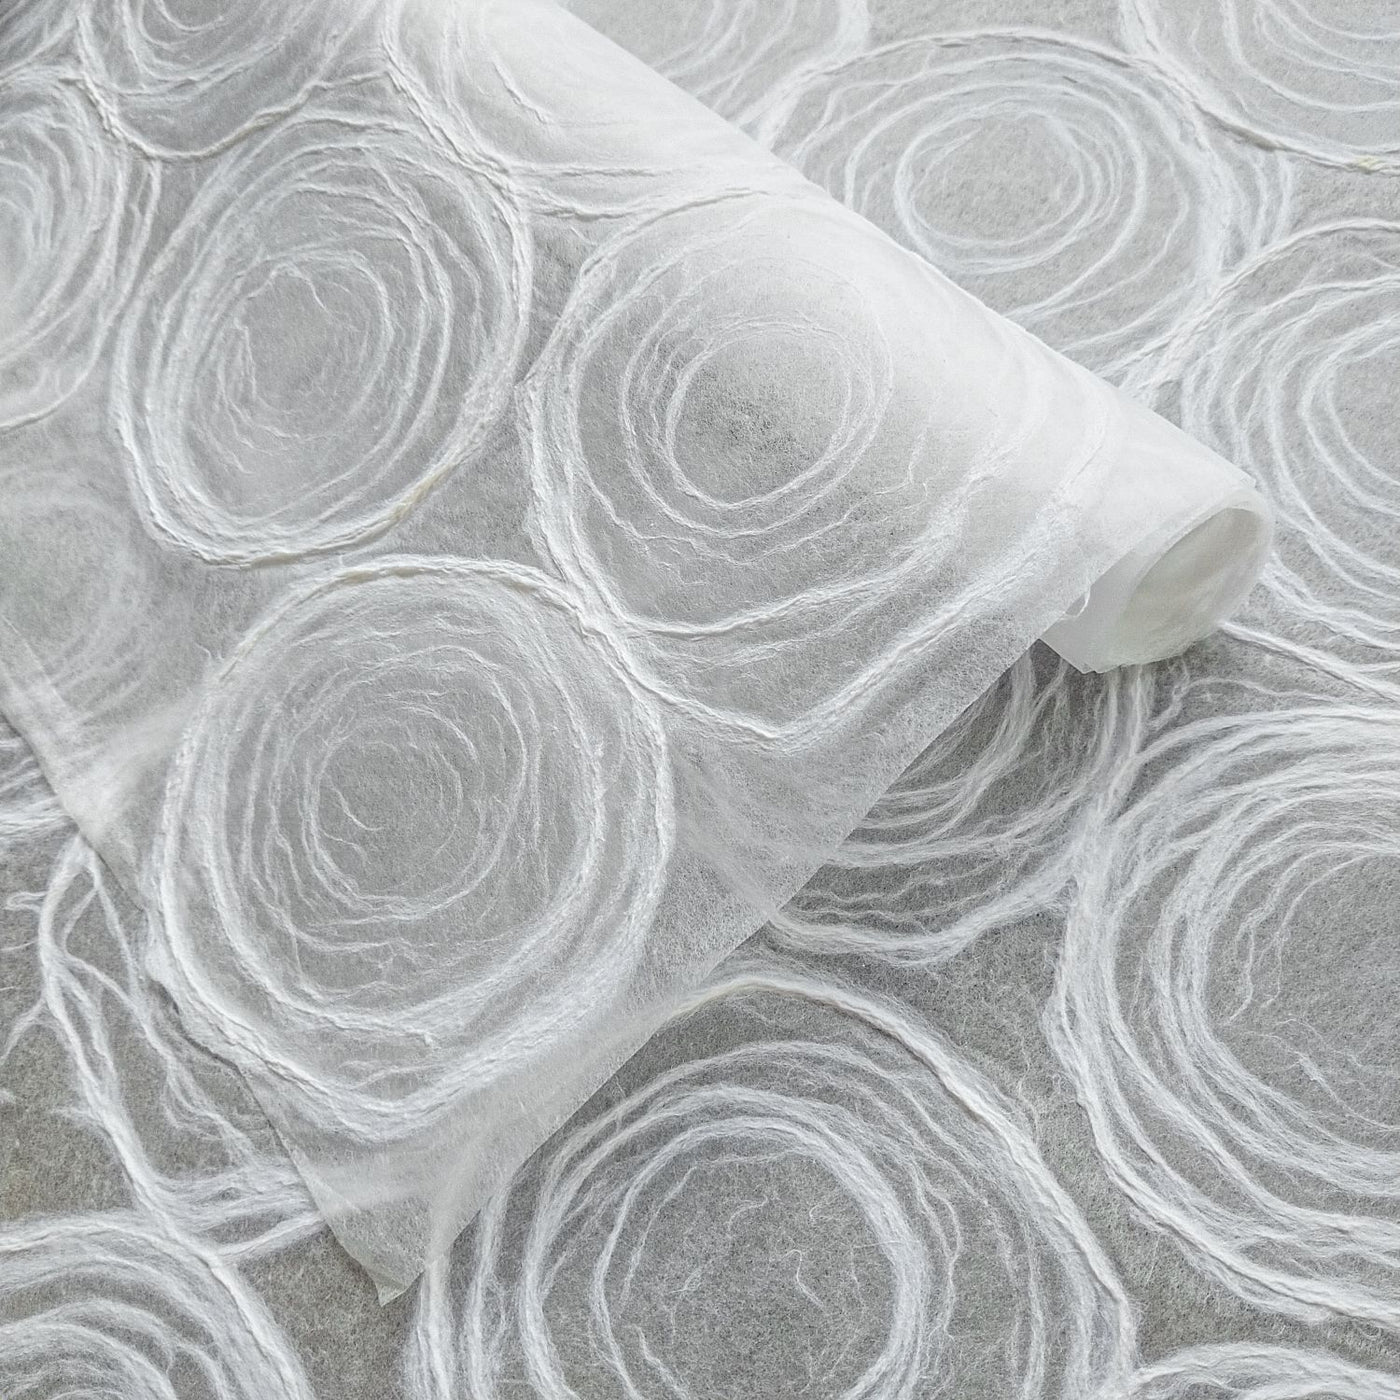 White paper lace and organza design